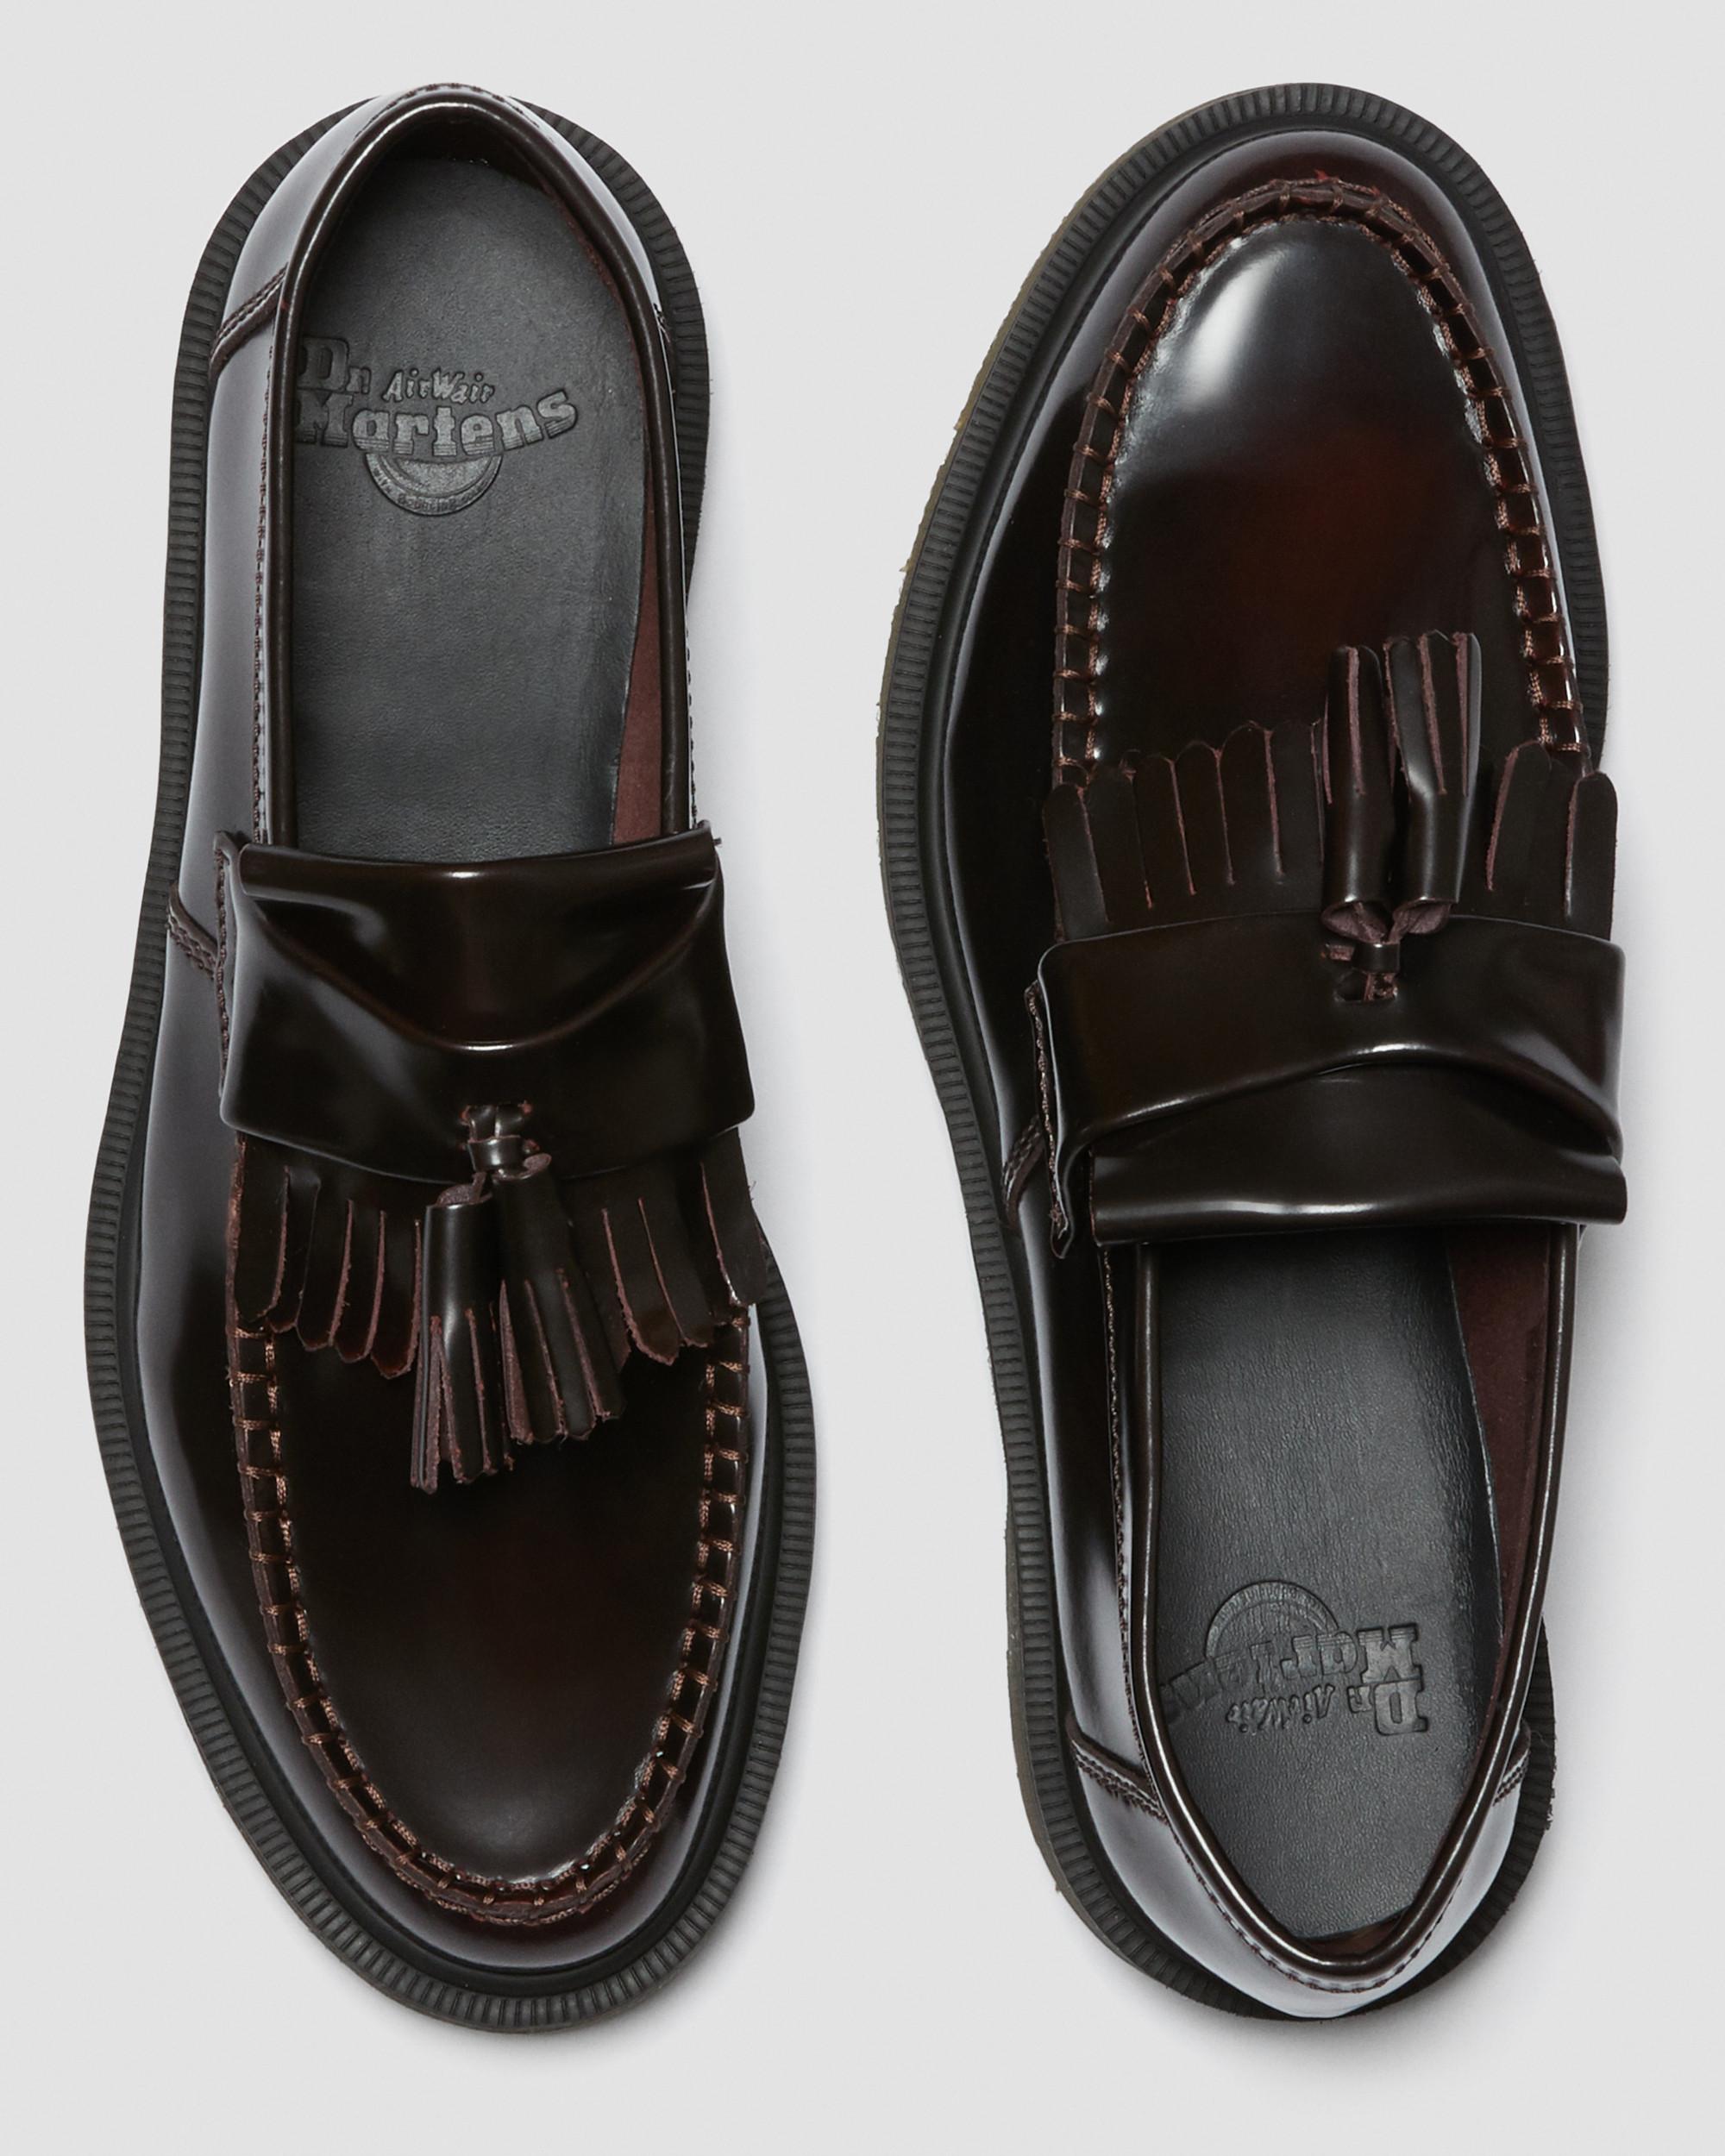 Adrian-loafers i Arcadia-læder med kvastAdrian-loafers i Arcadia-læder med kvast Dr. Martens